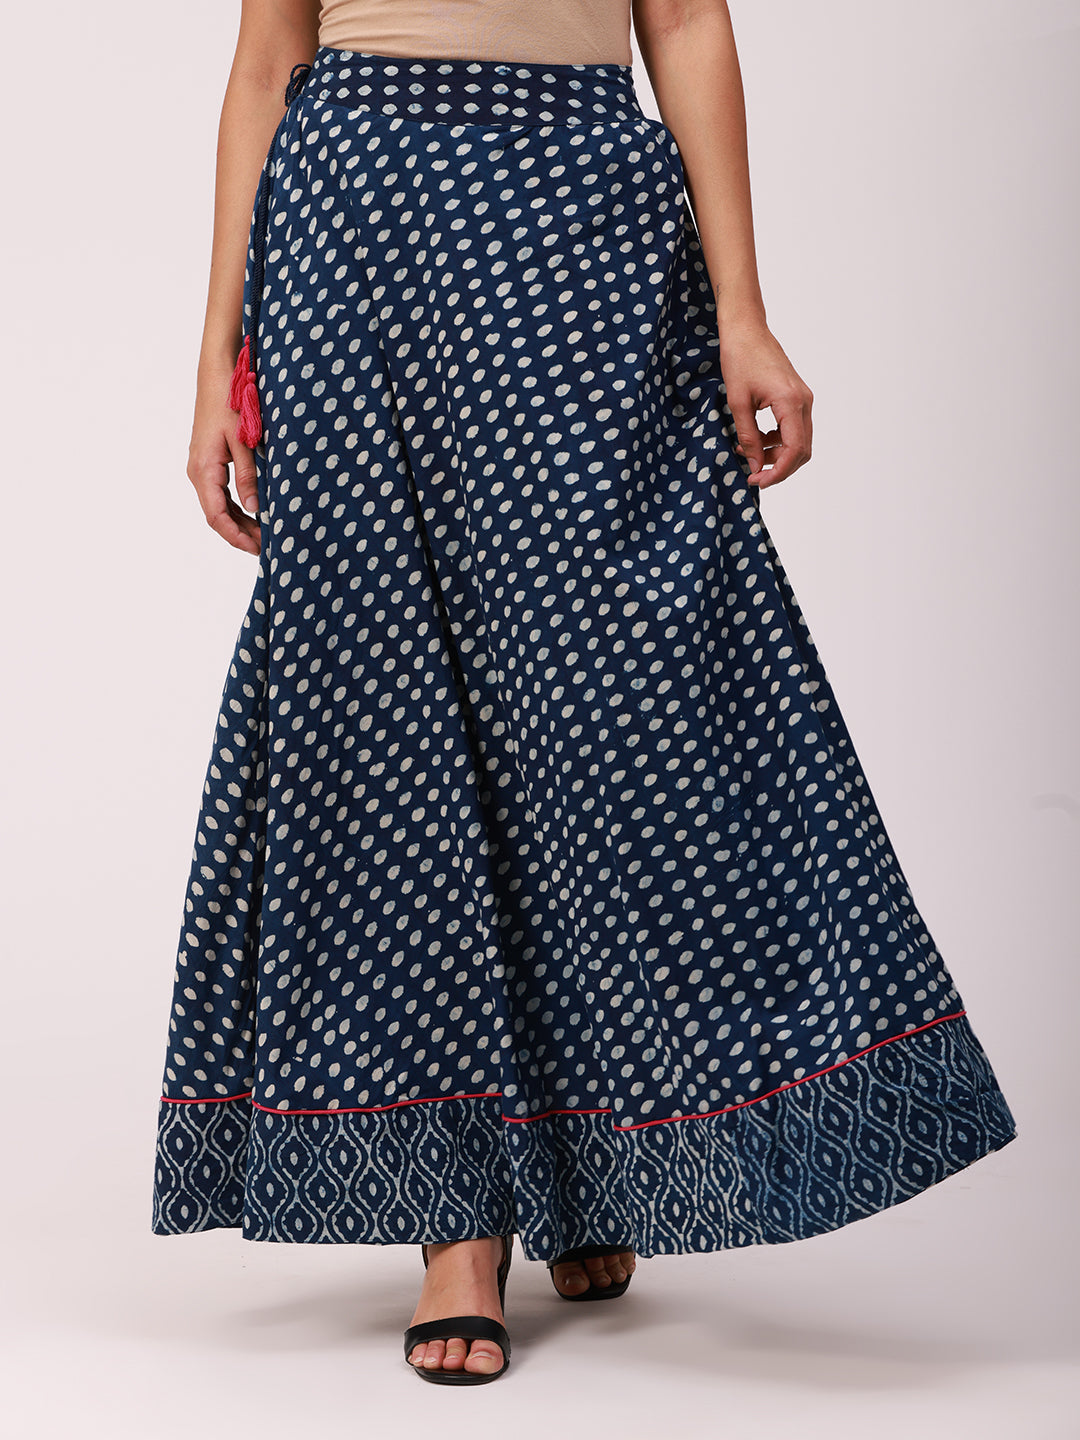 Discover 155+ indigo long skirt super hot